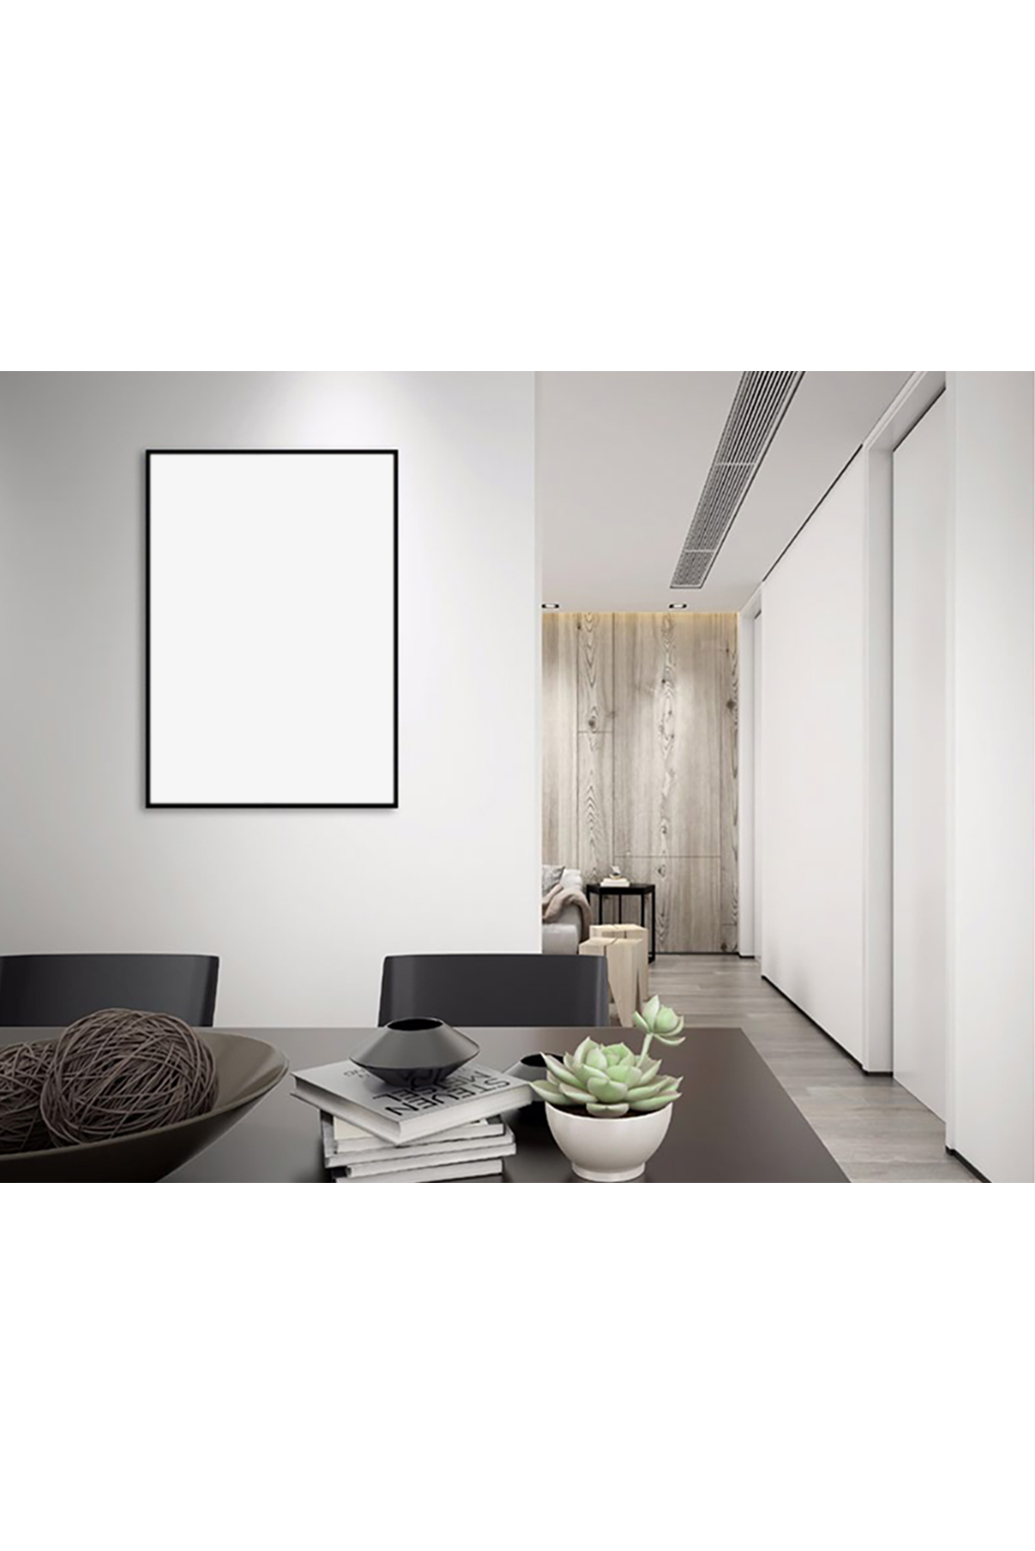 客厅内装饰画画框模型设计素材模板白色背景墙创意样机图片